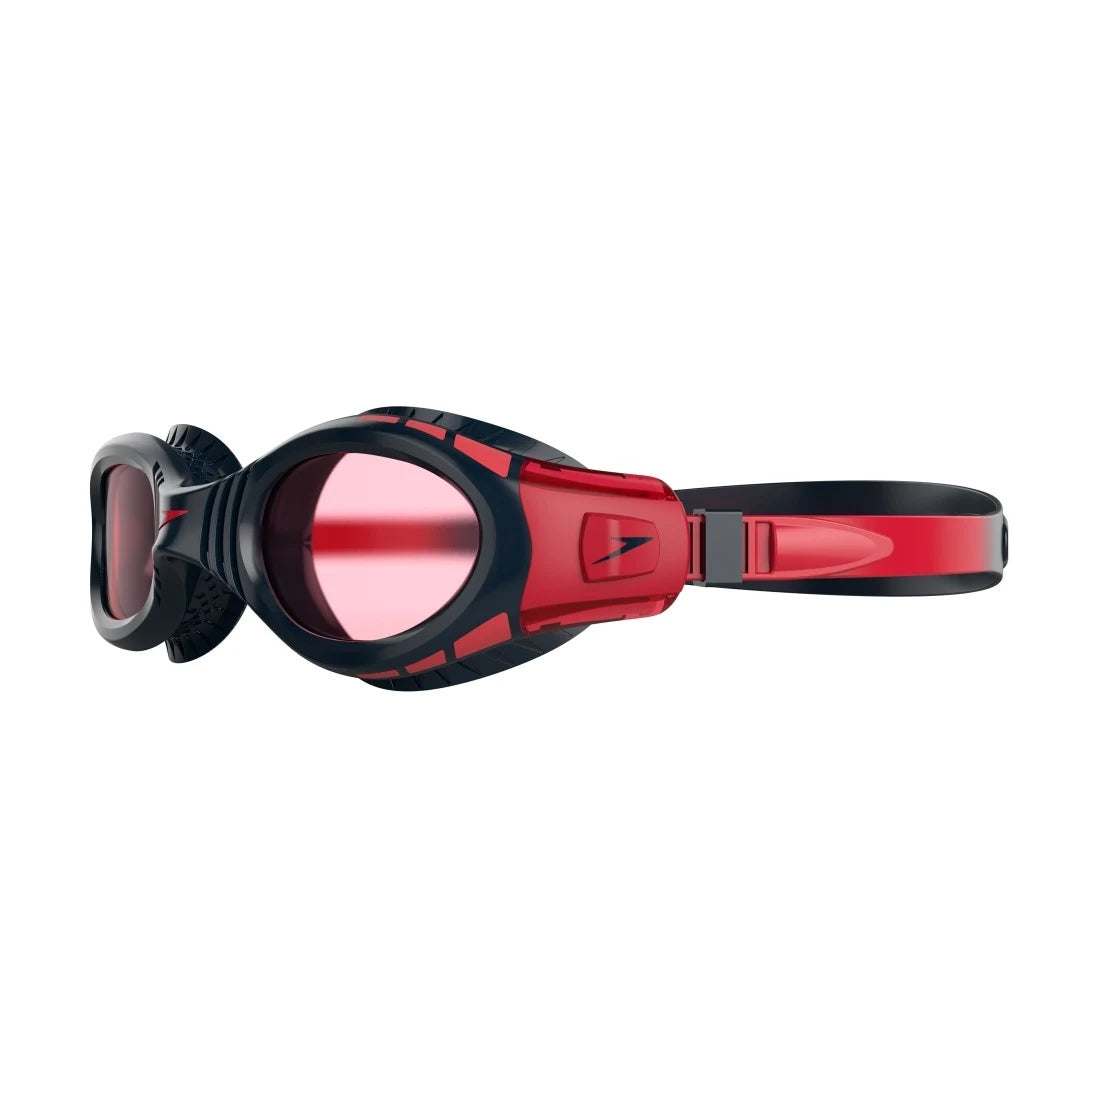 Speedo FutureBiof Fseal Dual Goggle, Junior - Navy/Red - Best Price online Prokicksports.com